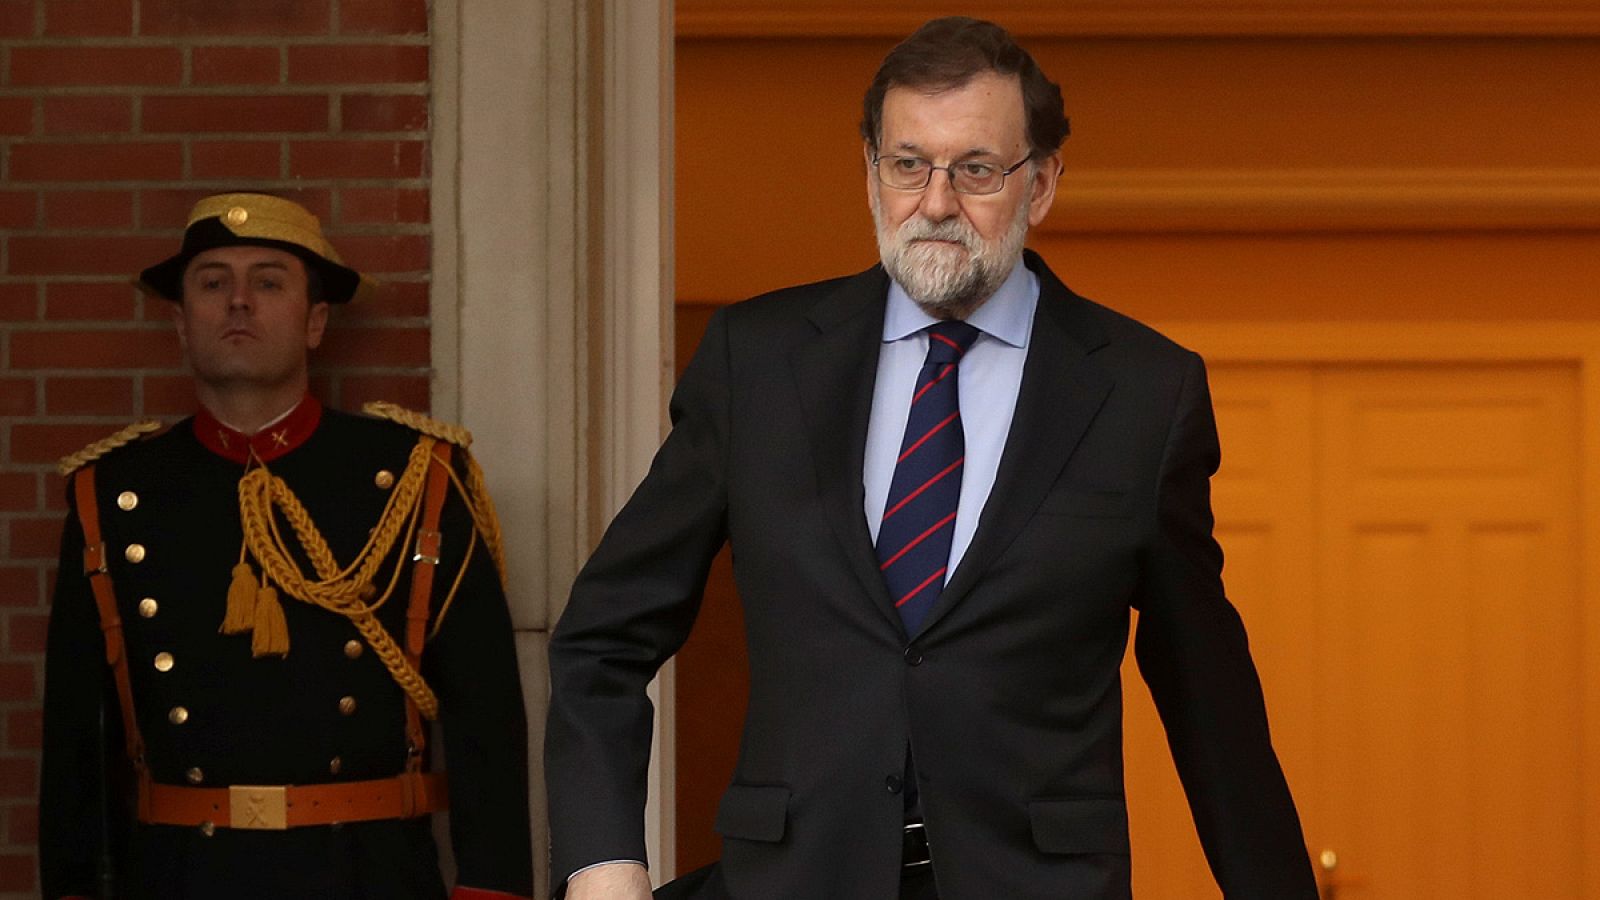 El presidente del Gobierno, Mariano Rajoy, saliendo del palacio de la Moncloa